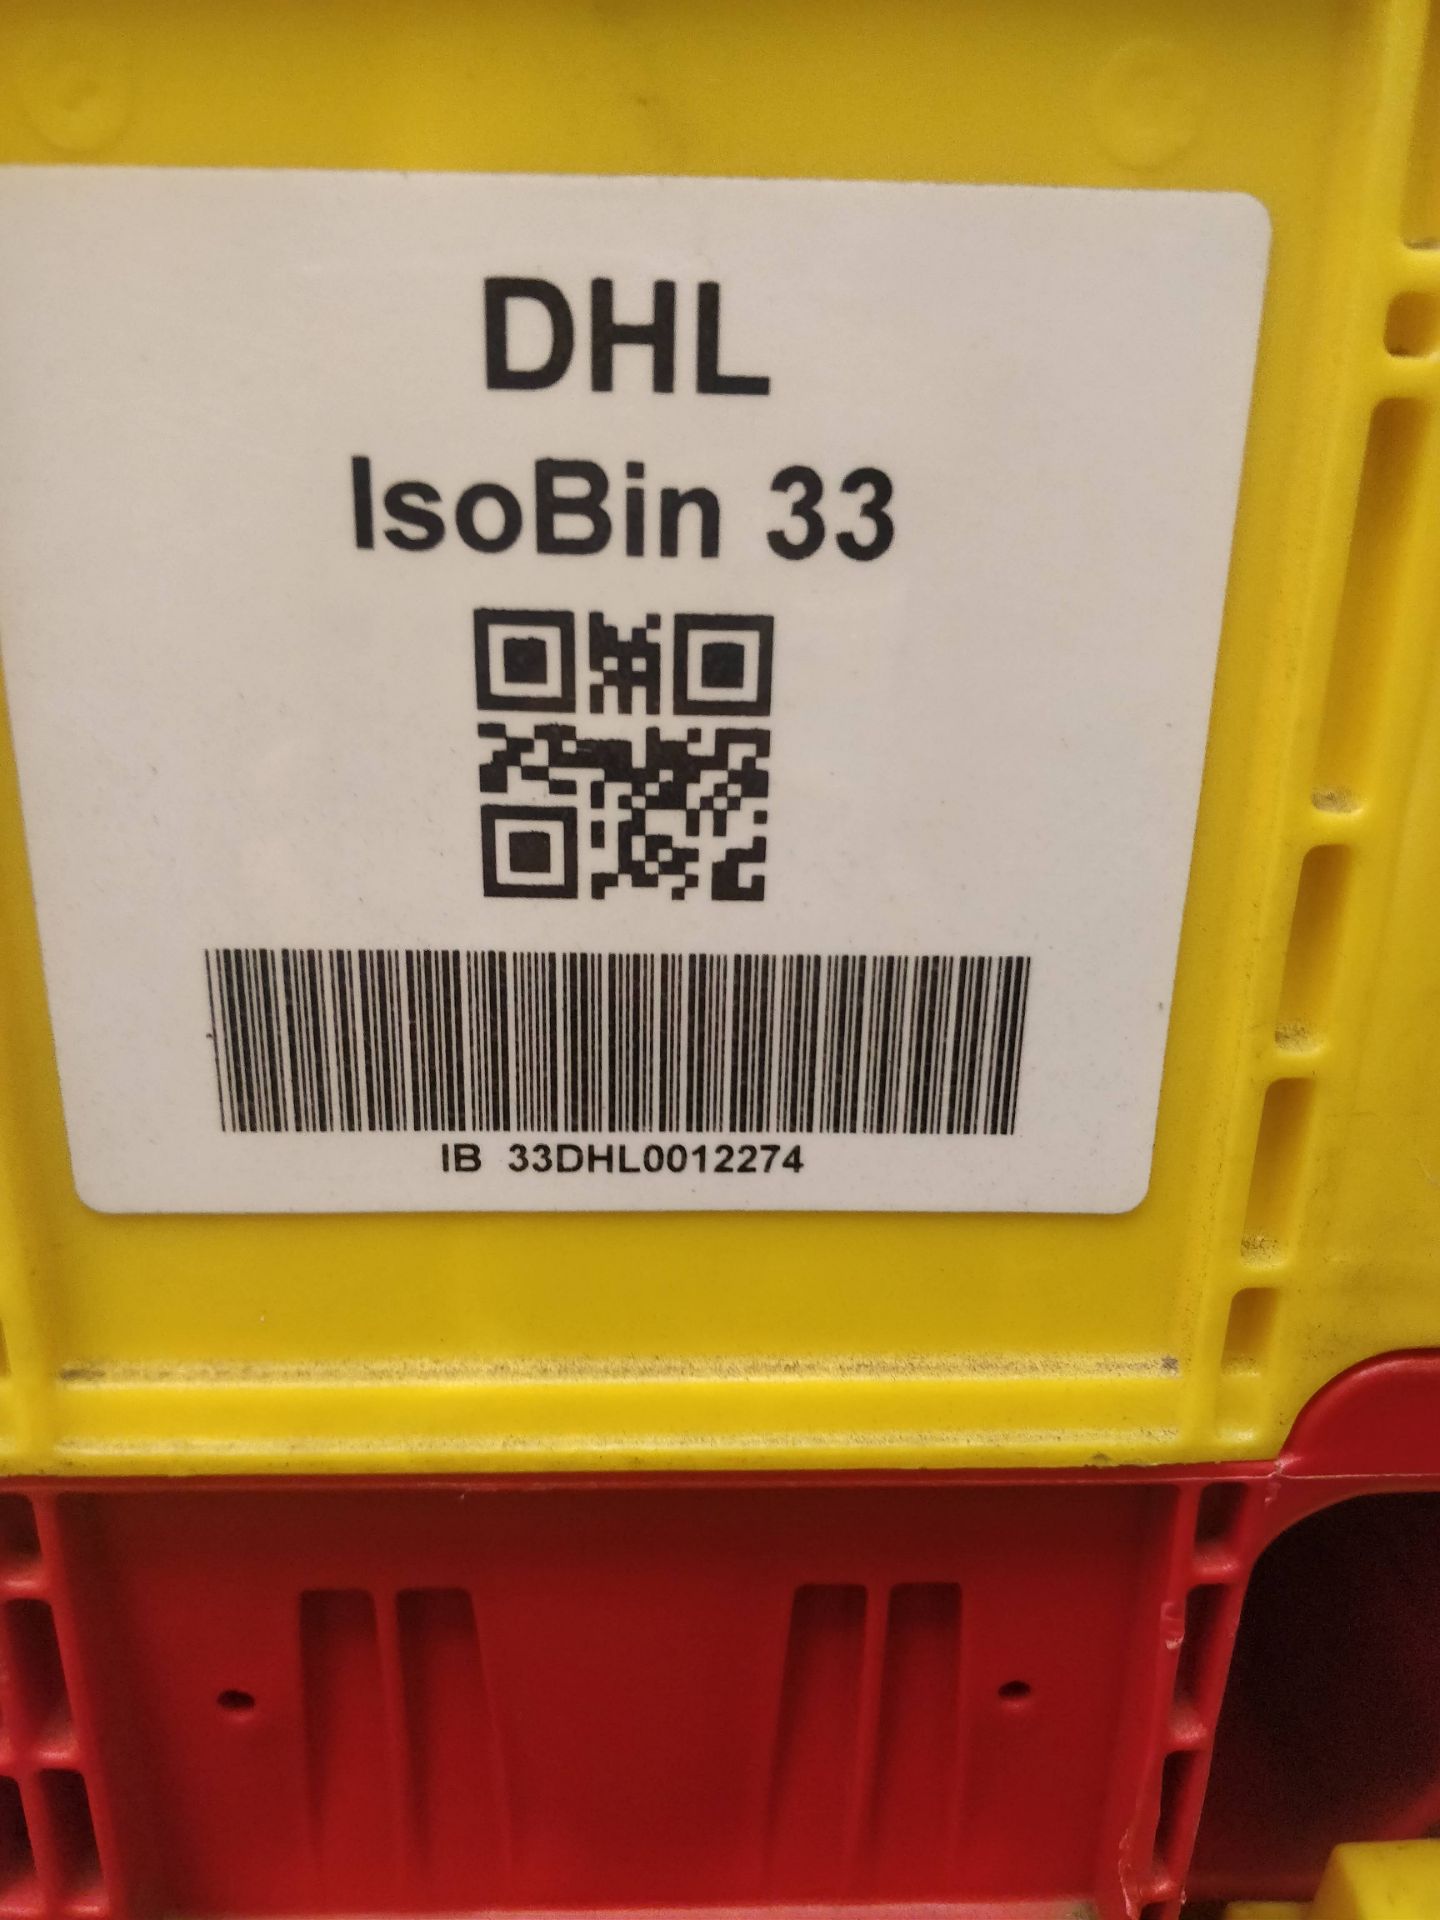 x8 DHL IsoBin 33 - Image 4 of 5